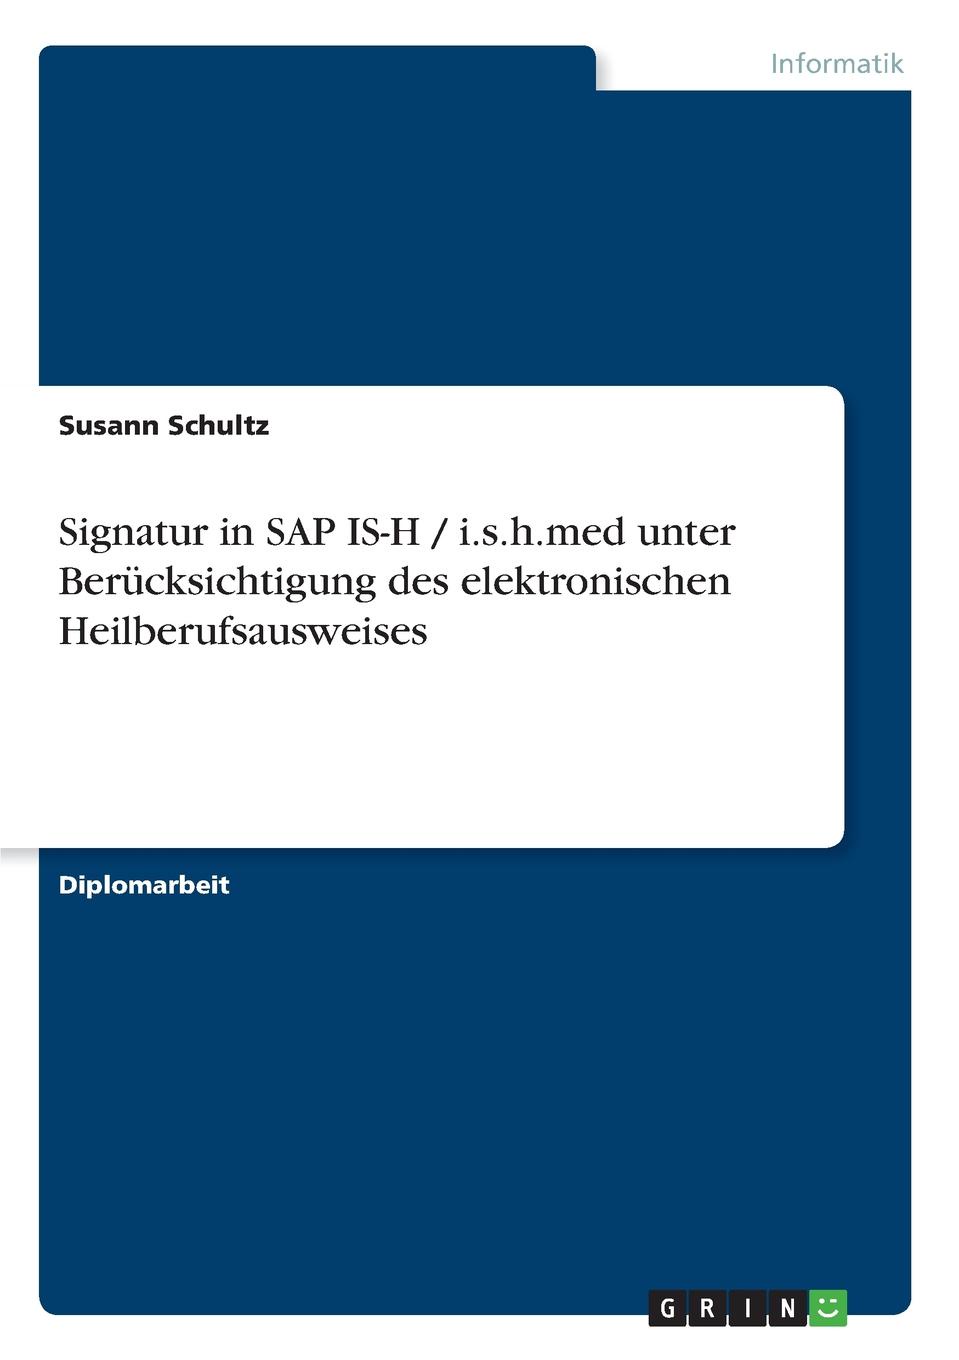 Signatur in SAP IS-H / i.s.h.med unter Berucksichtigung des elektronischen Heilberufsausweises